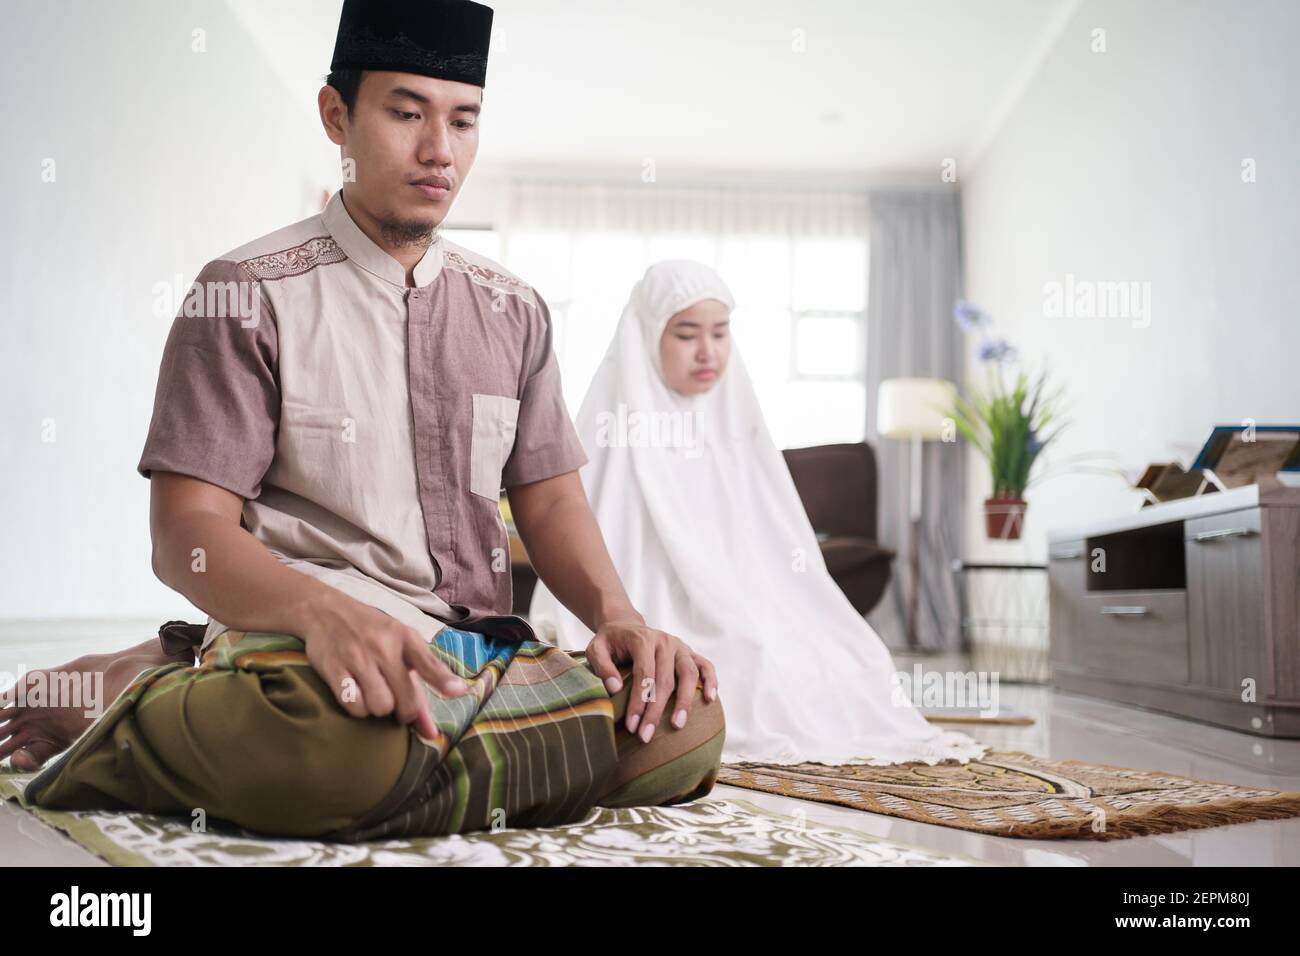 le mari et la femme musulmans d'asie prient la jamaah ensemble chez eux Banque D'Images